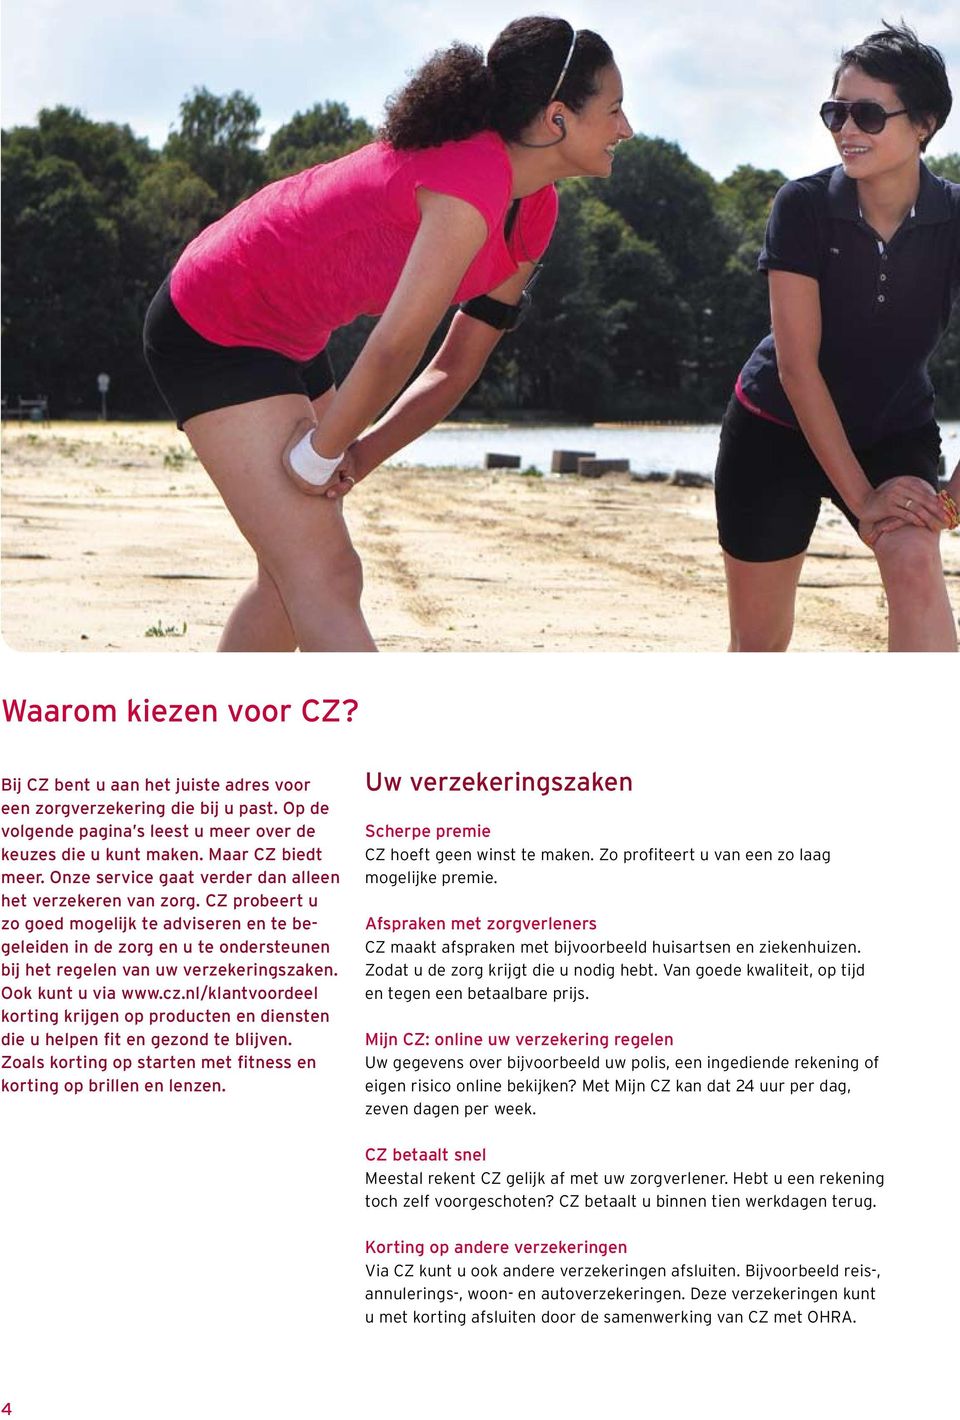 Ook kunt u via www.cz.nl/klantvoordeel korting krijgen op producten en diensten die u helpen fit en gezond te blijven. Zoals korting op starten met fitness en korting op brillen en lenzen.